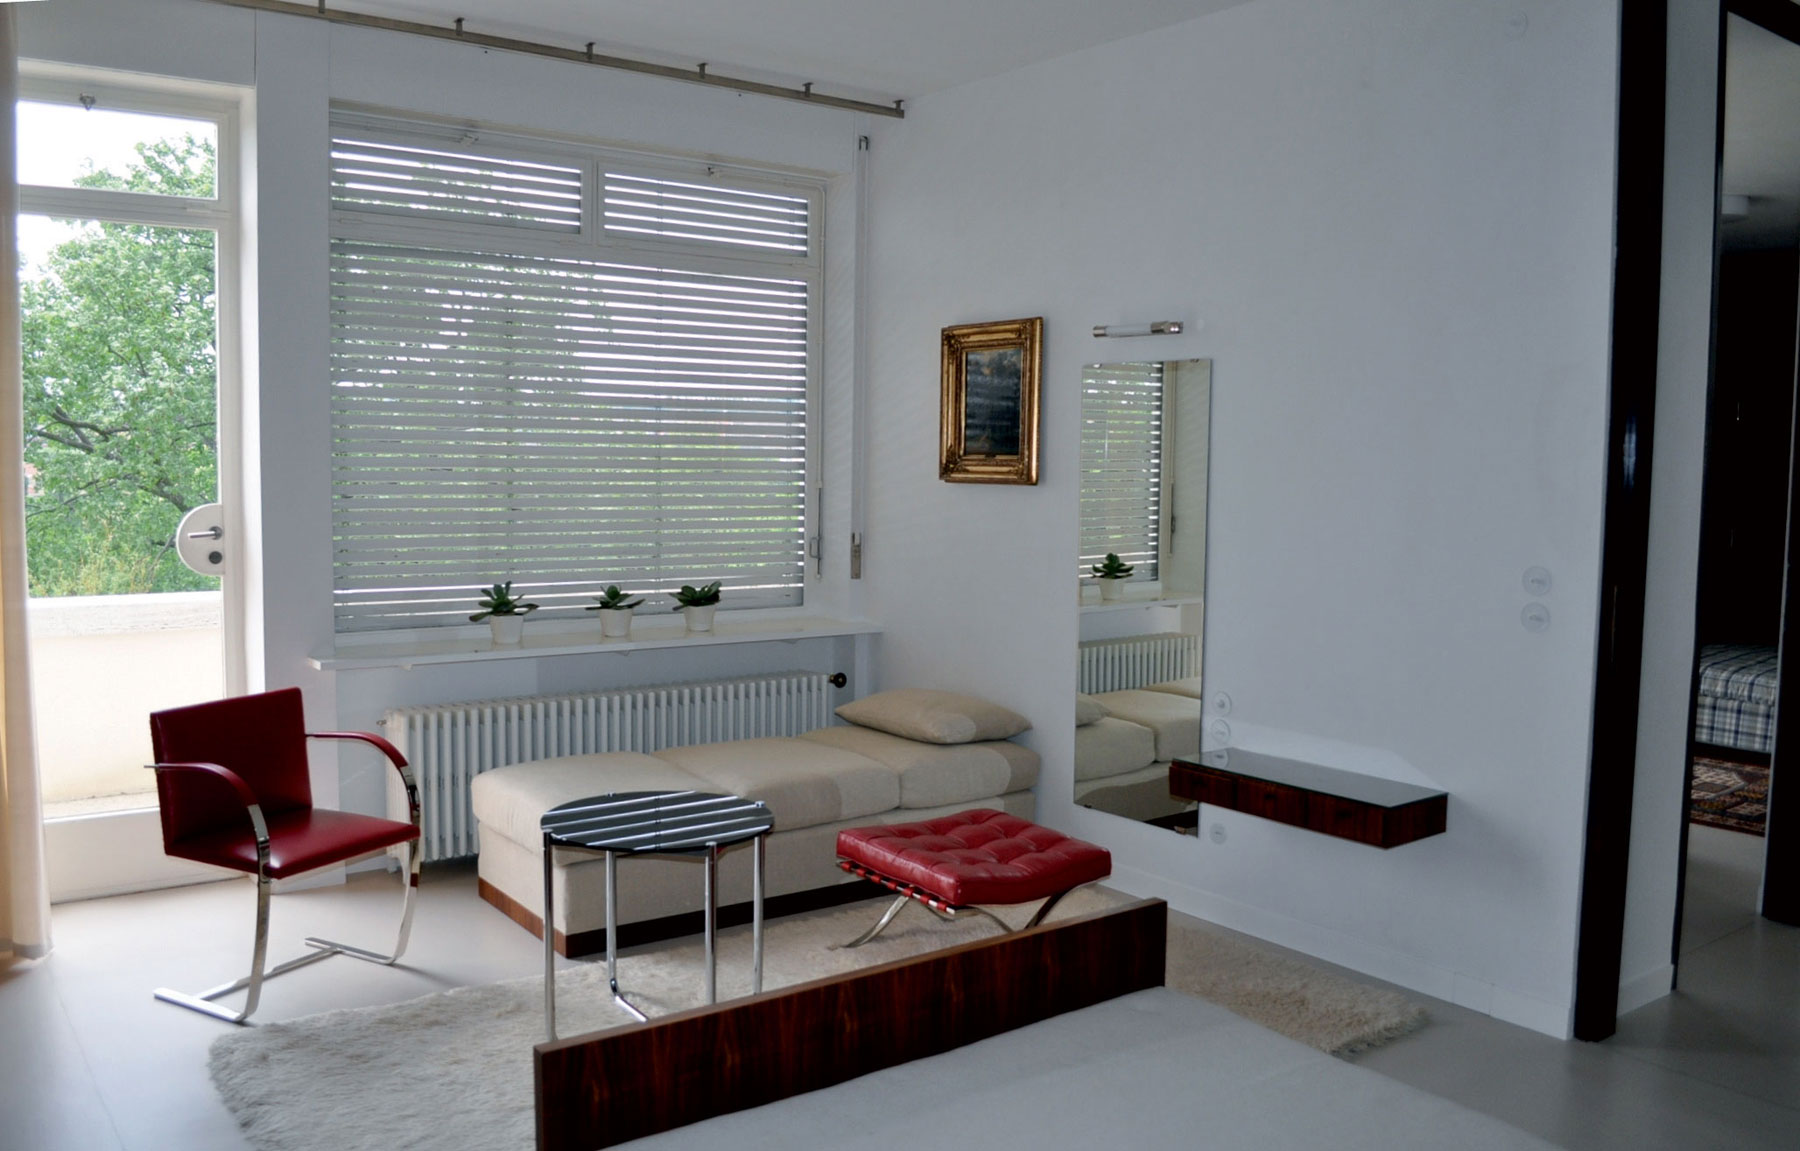 Překvapivá jednoduchost luxusní vily - rekonstrukce původního interiéru. (Foto Josef Chybík, 2012)